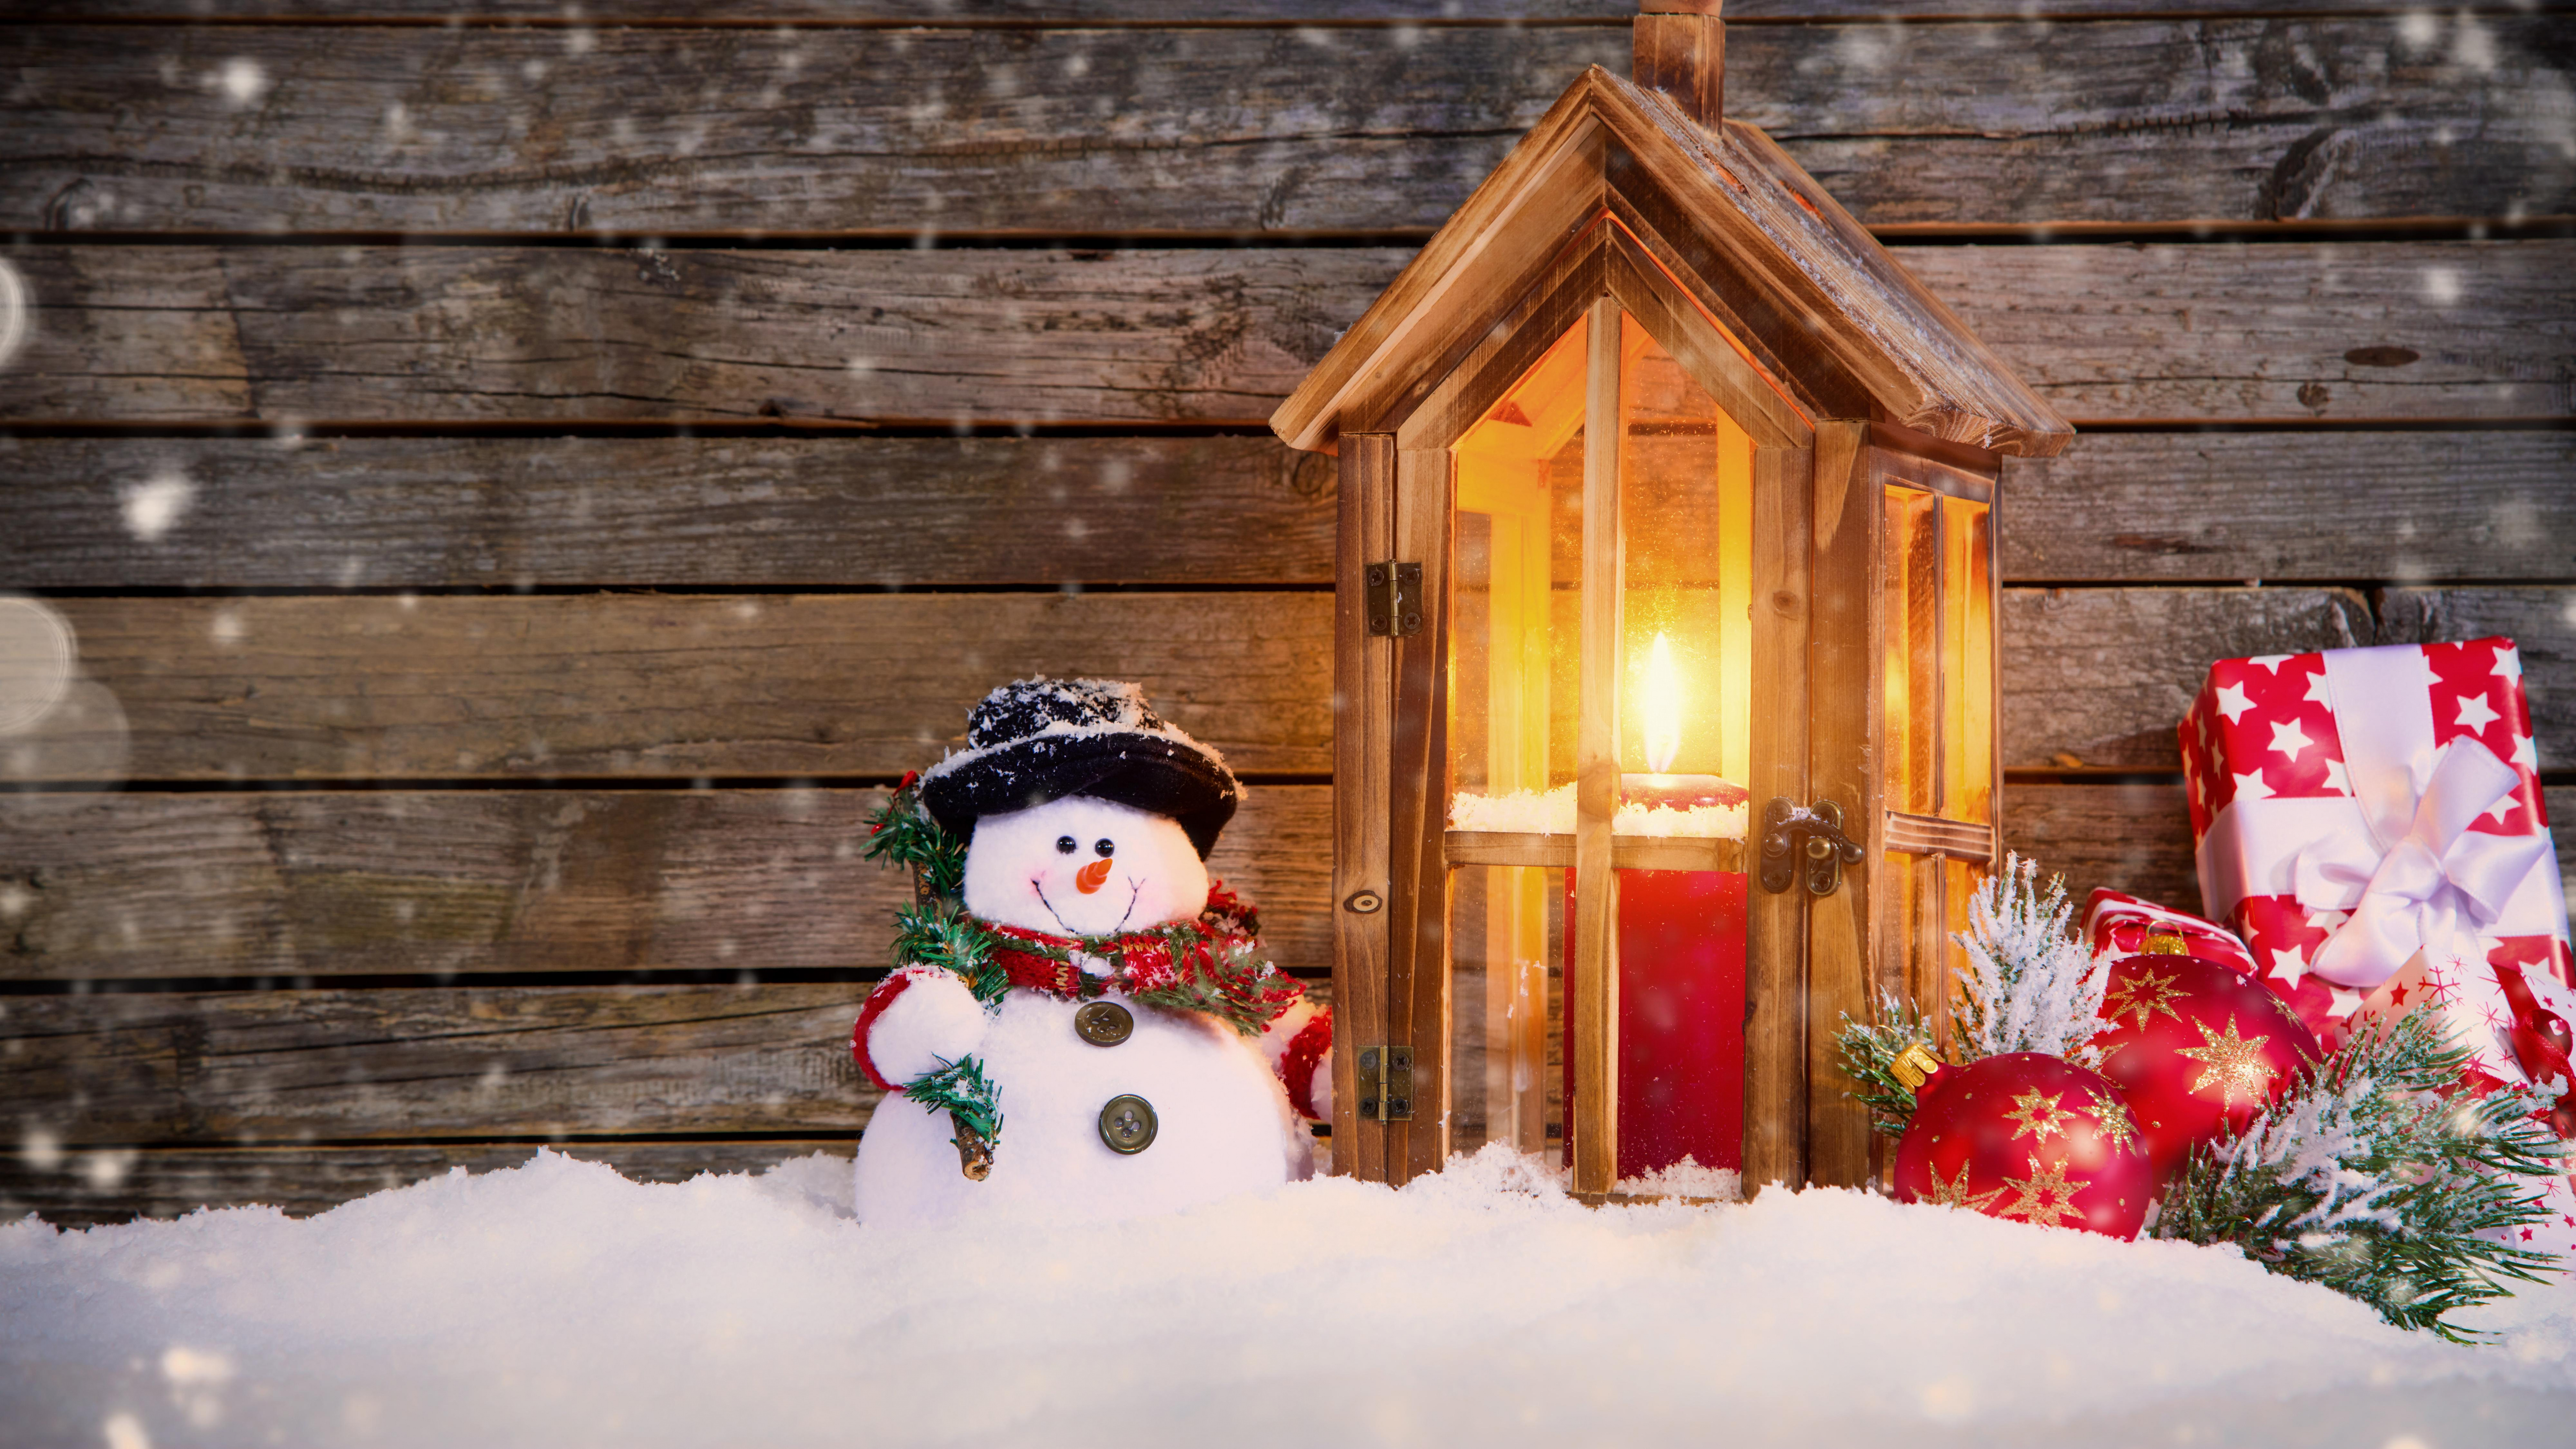 圣诞节那天, 雪人, 圣诞装饰, 圣诞节的装饰品, 冬天 壁纸 7680x4320 允许